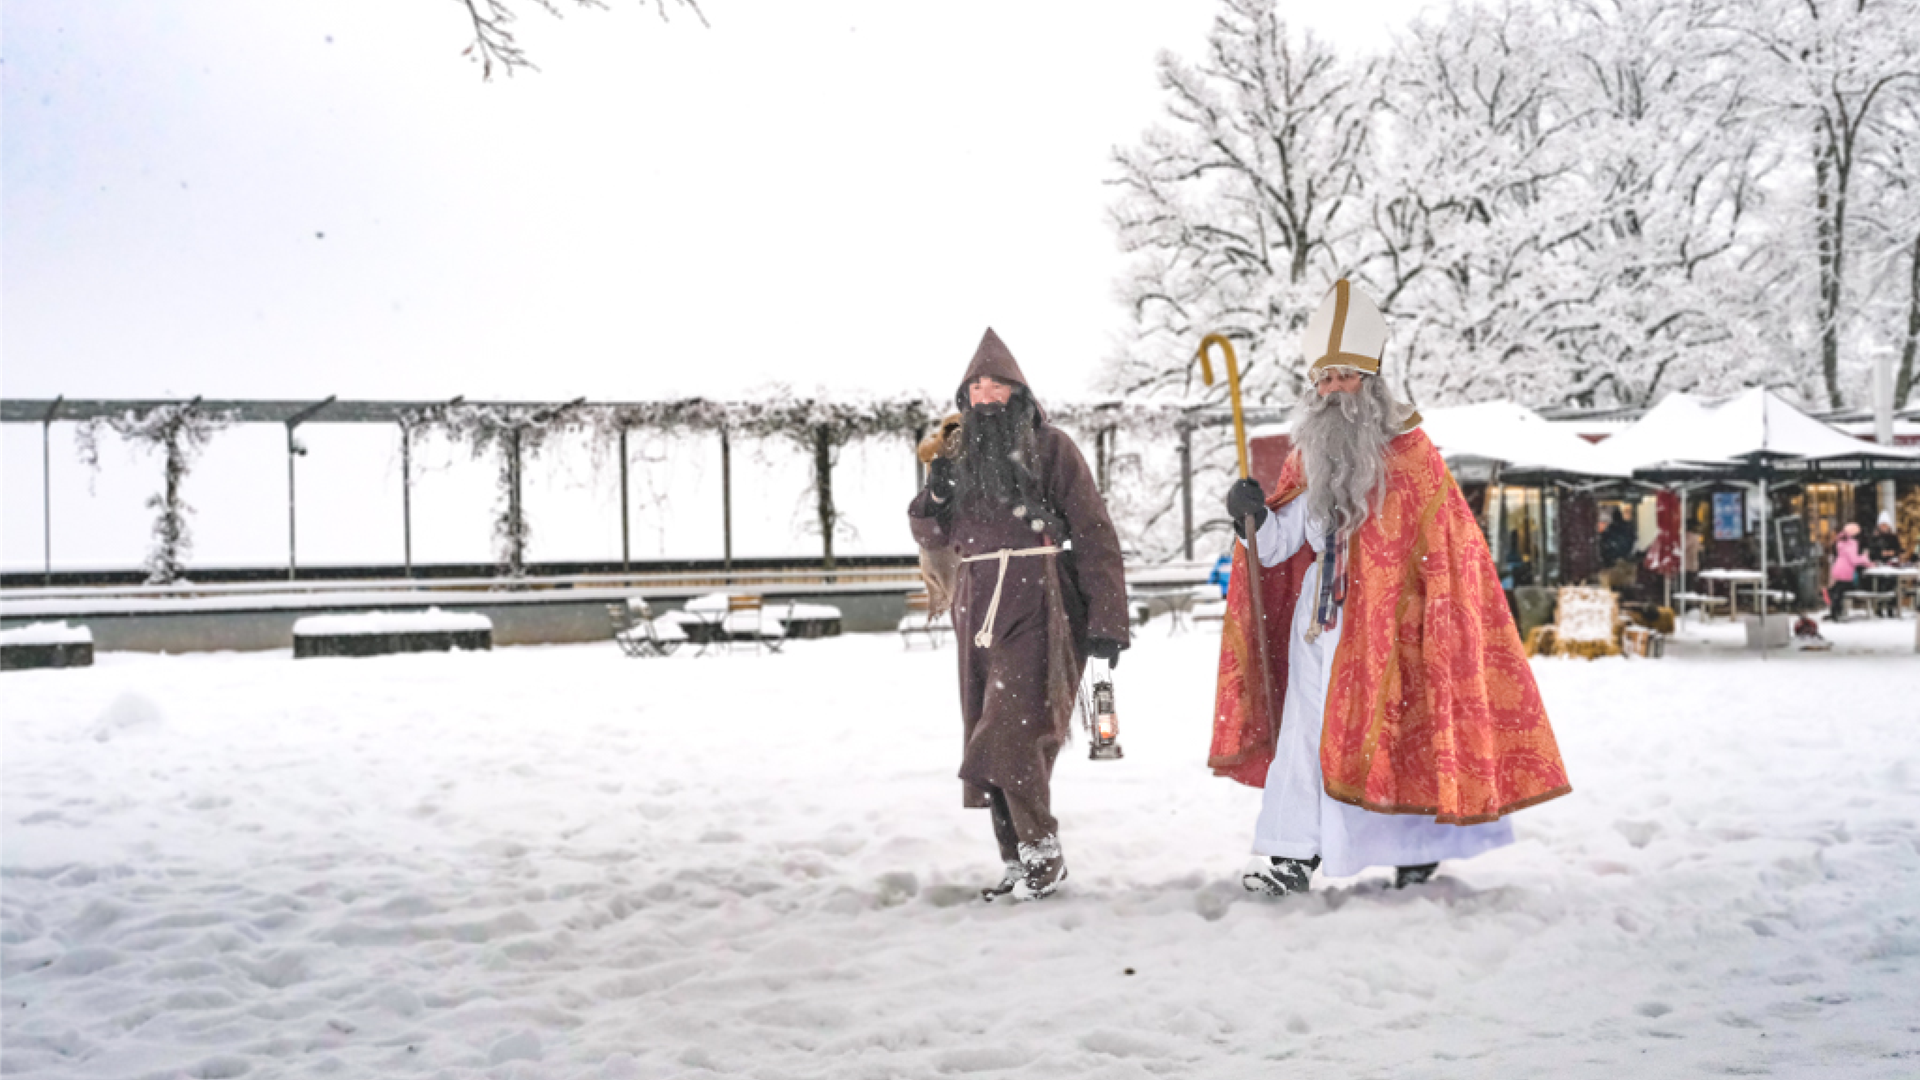 Saint Nicholas and his helper walk through the snow